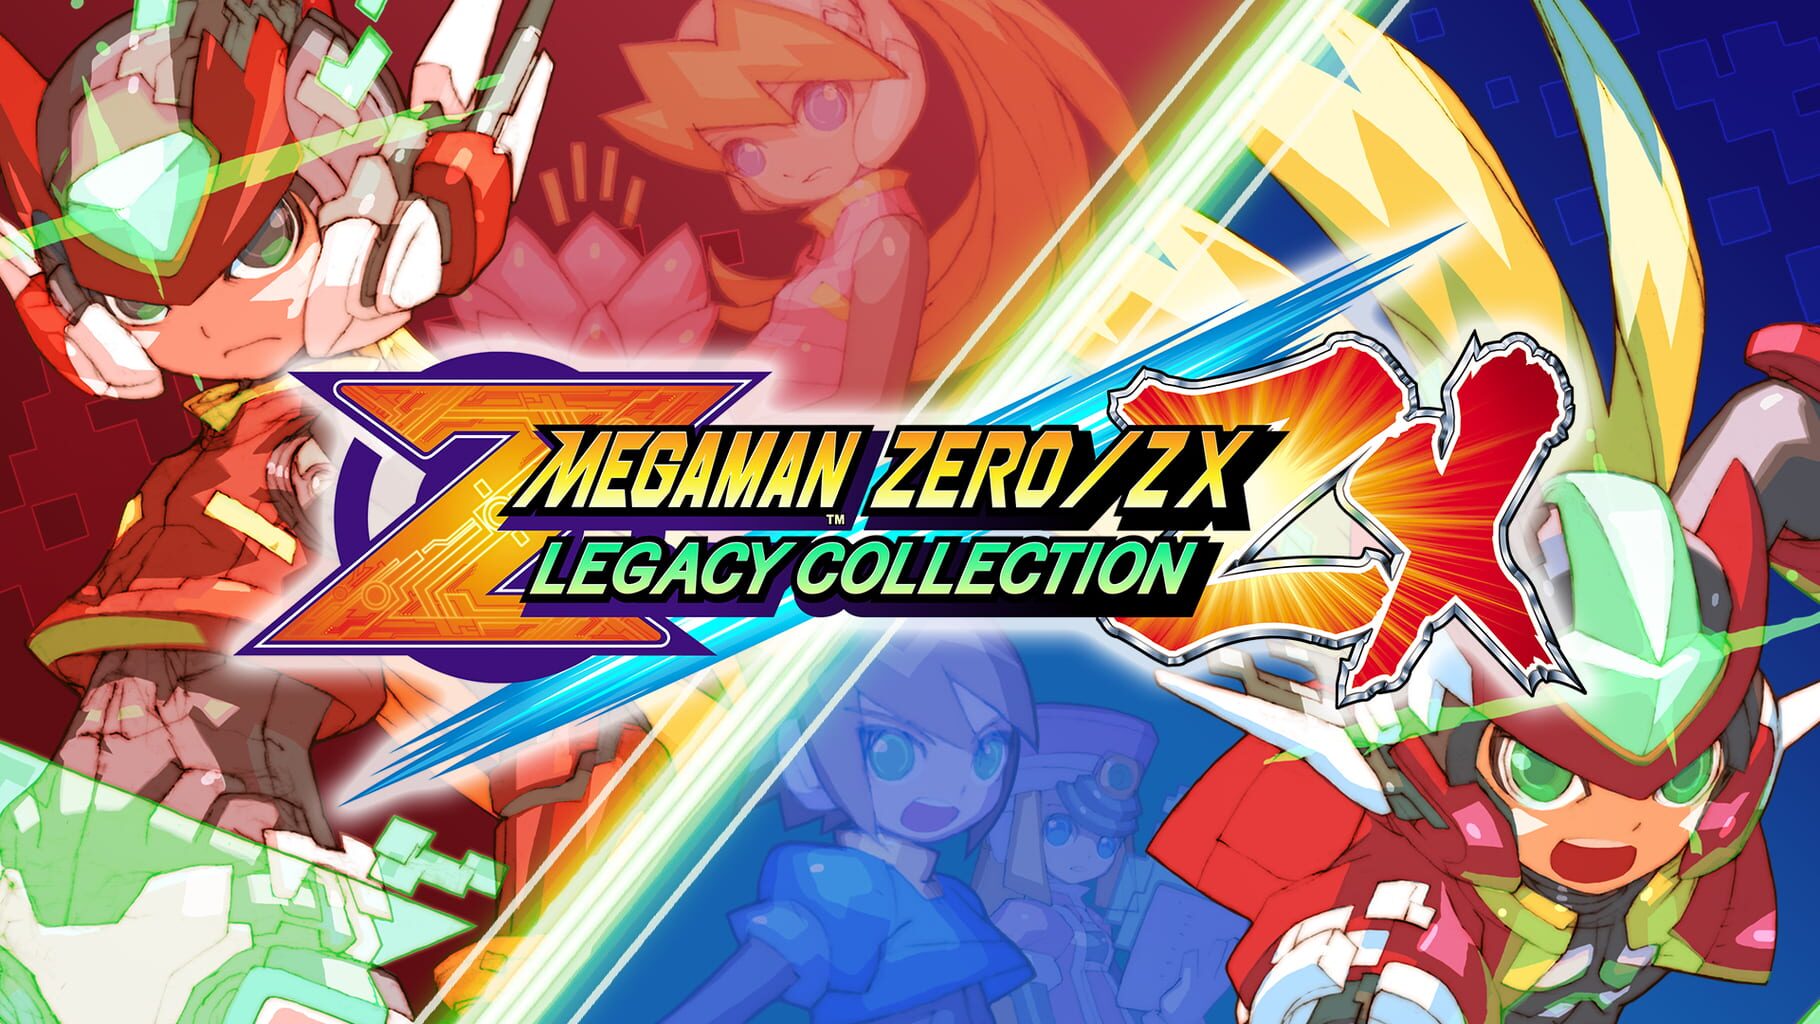 Arte - Mega Man Zero/ZX: Legacy Collection